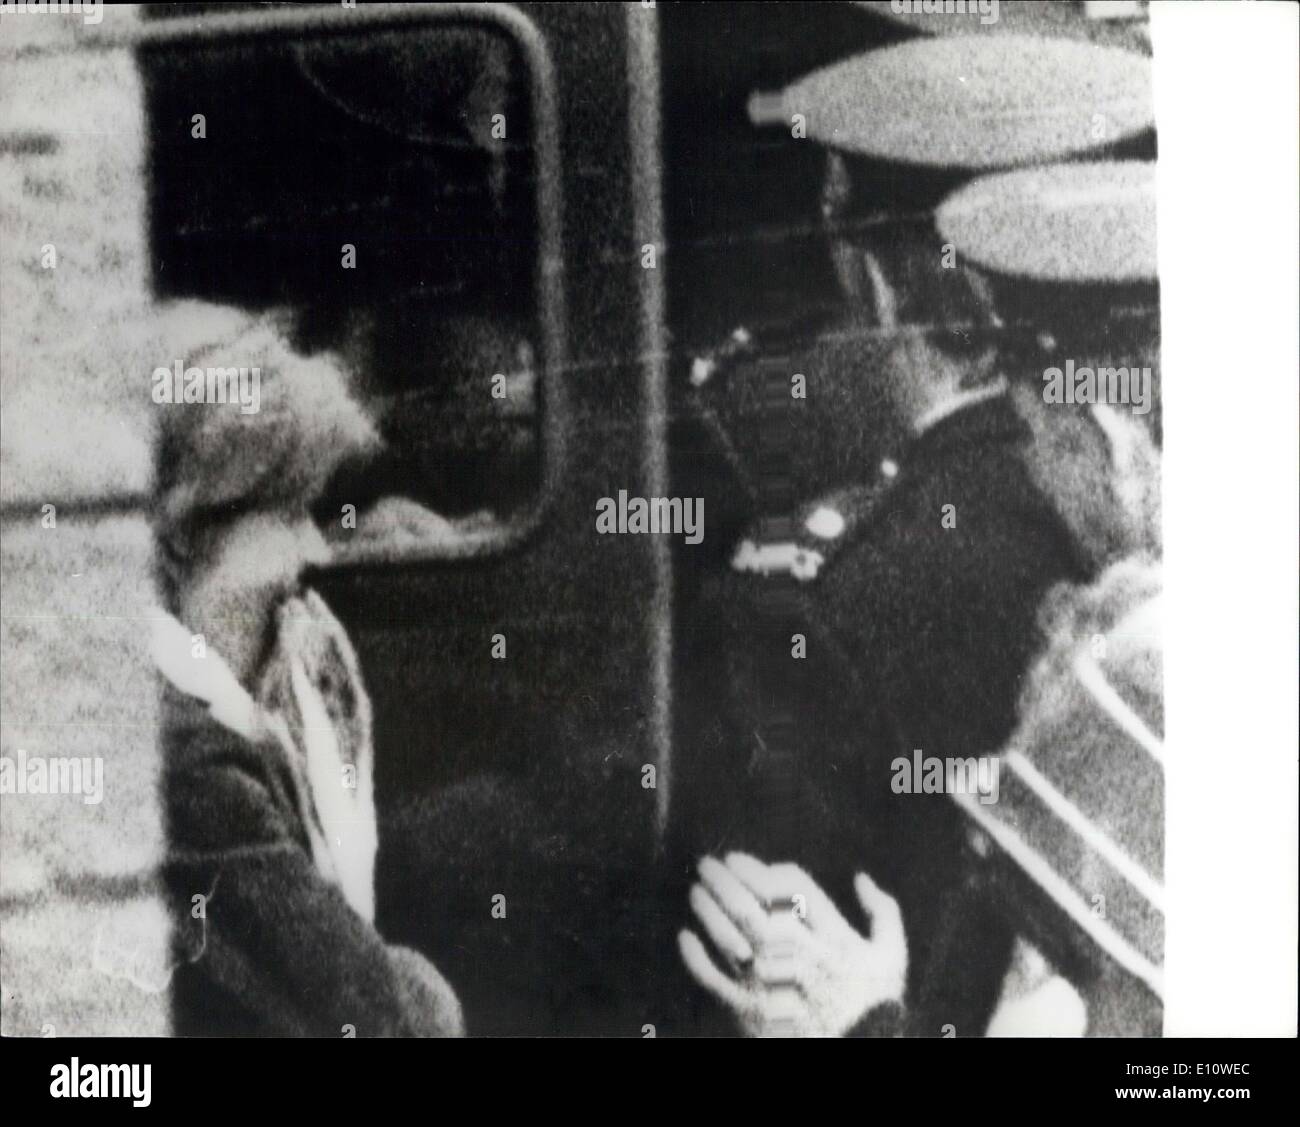 Juin 25, 1974 - Dr, Bridget Rose Dugdale est emprisonné pendant neuf ans à Dublin aujourd'hui : Dr, Bridget Rose Dugdale, le 33-year-old British conférencier, a été emprisonné pendant neuf ans à un cour de Dublin aujourd'hui. quand on leur a demandé de répondre à l'accusation qu'elle avait reçu 19 peintures appartenant à Air Alfred Beit, sachant qu'ils ont été volés, répondit-elle ; ''fièrement et incorruptibly coupable''. Après avoir été condamné par le juge O'Keeffe elle donna un poing serré salute et quitté la salle d'audience. La photo montre le Dr Banque D'Images